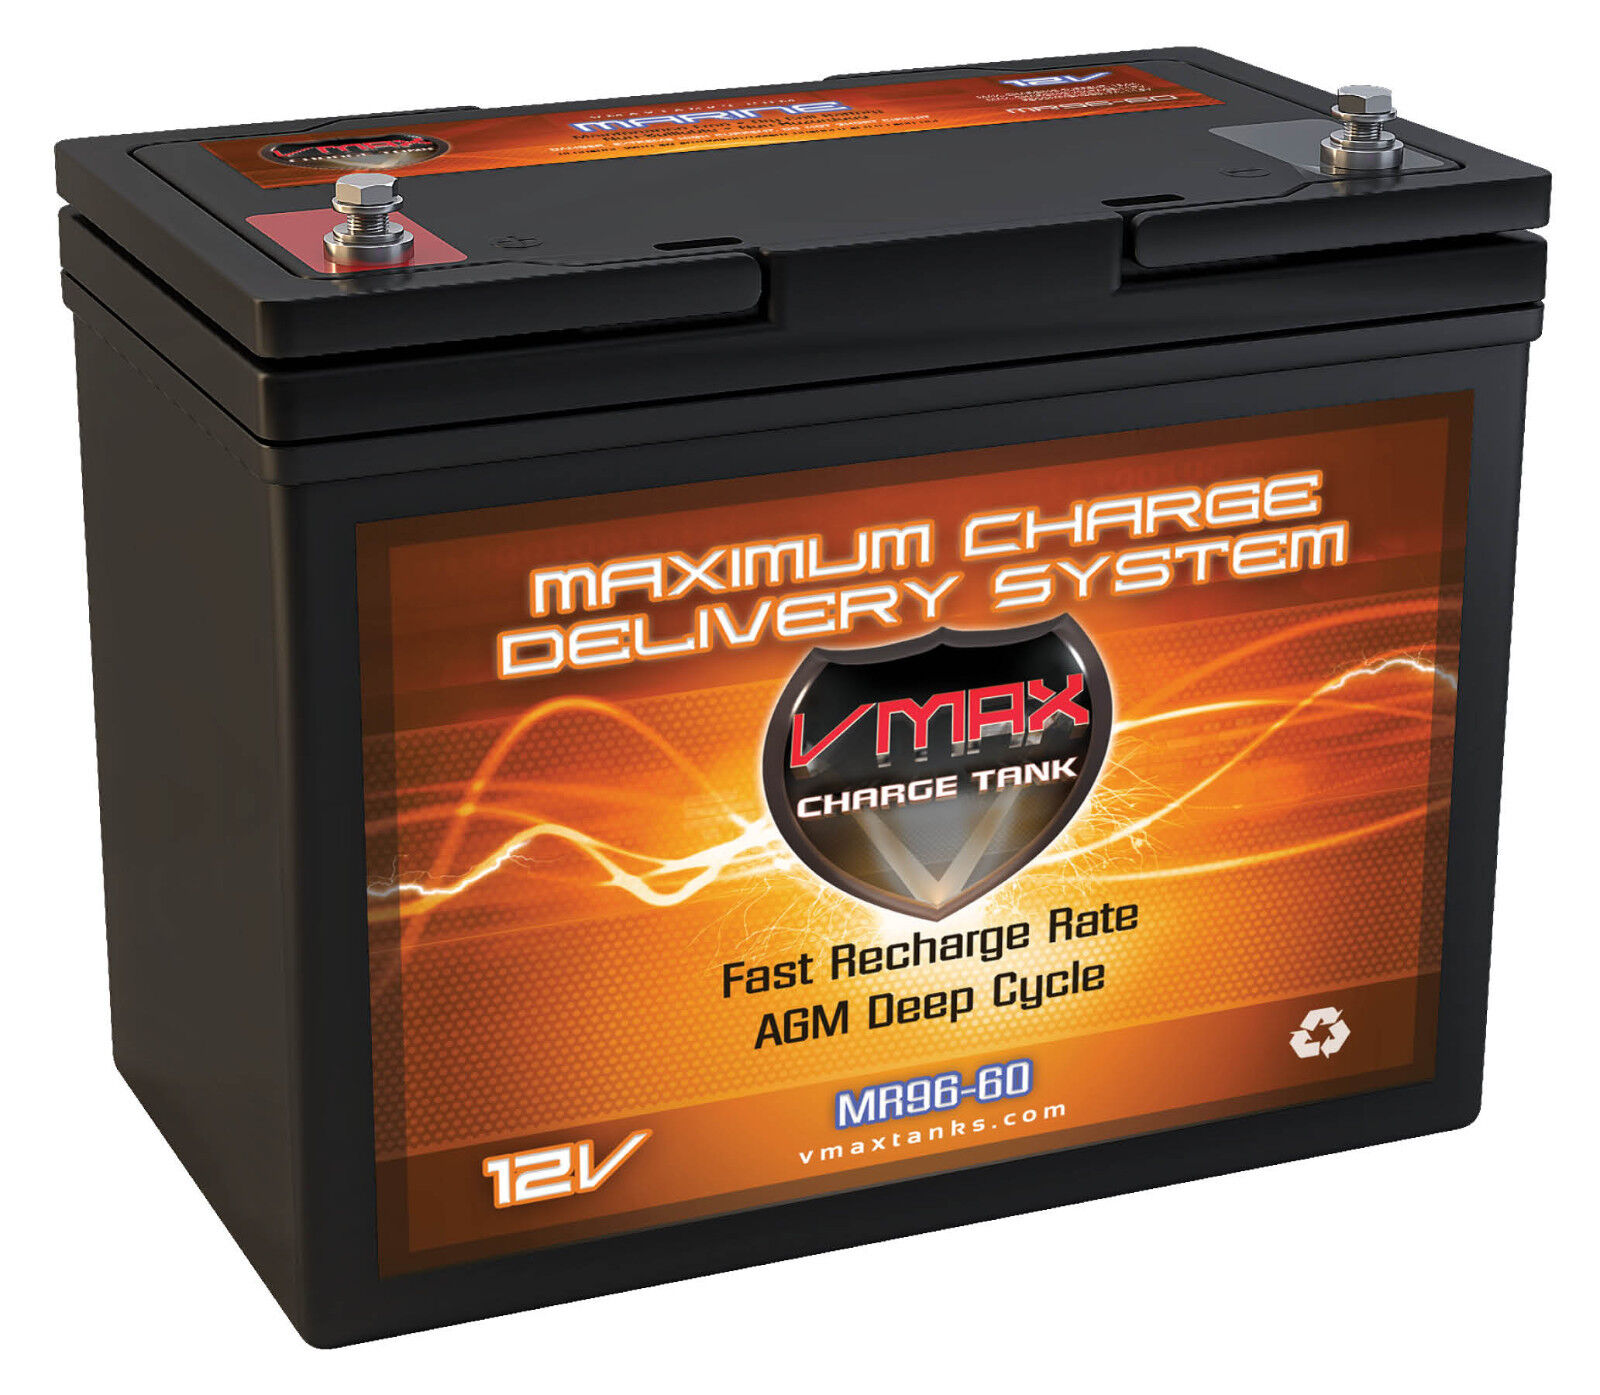 VMAX MR96-60 12V 60Ah 55lb Thrust Trolling Motor AGM Deep Cycle Battery 